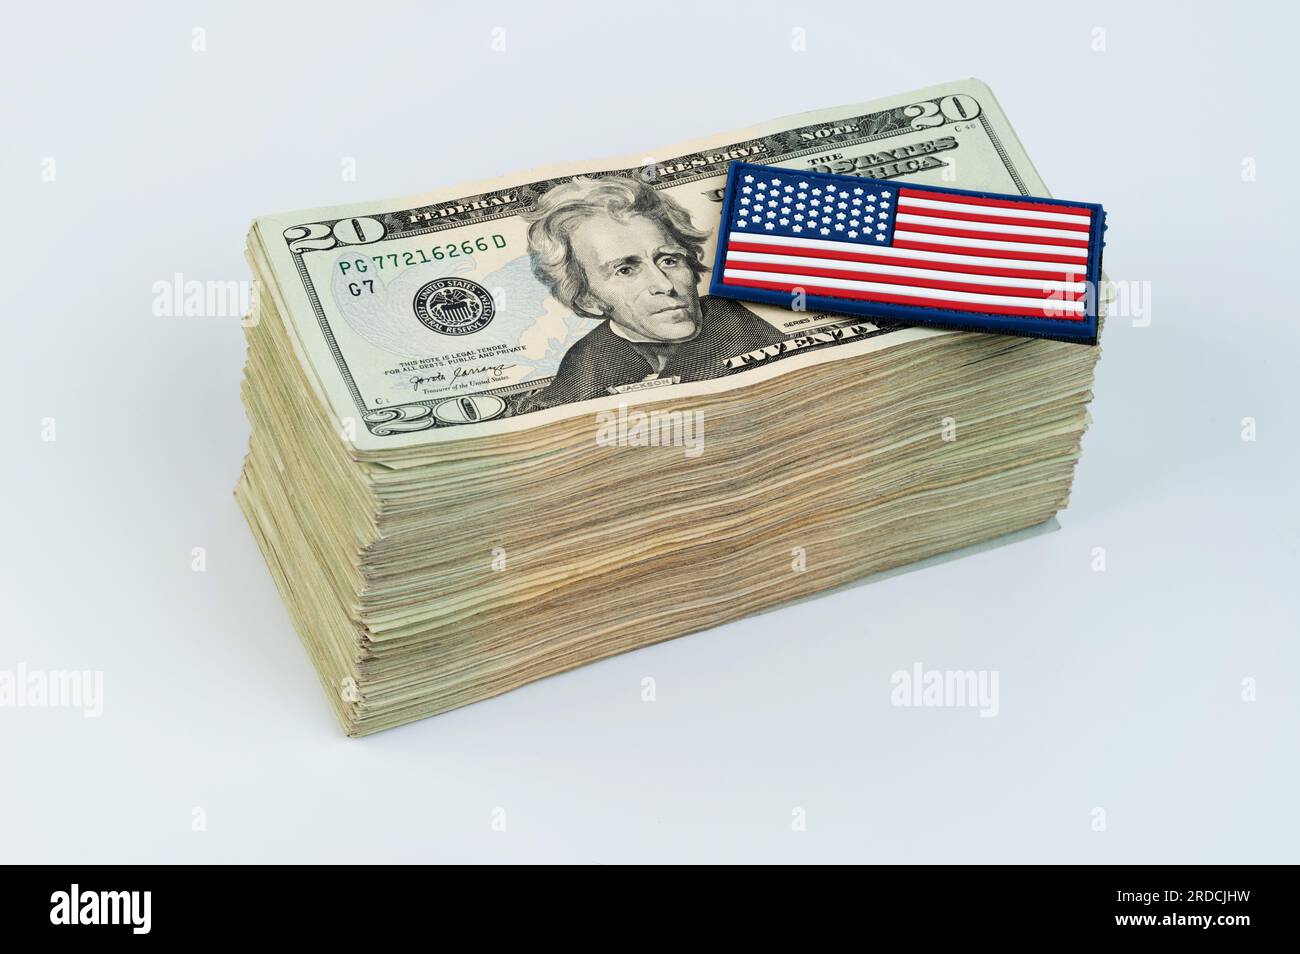 Bandiera americana su una pila di banconote da 20 dollari isolata su sfondo bianco Foto Stock